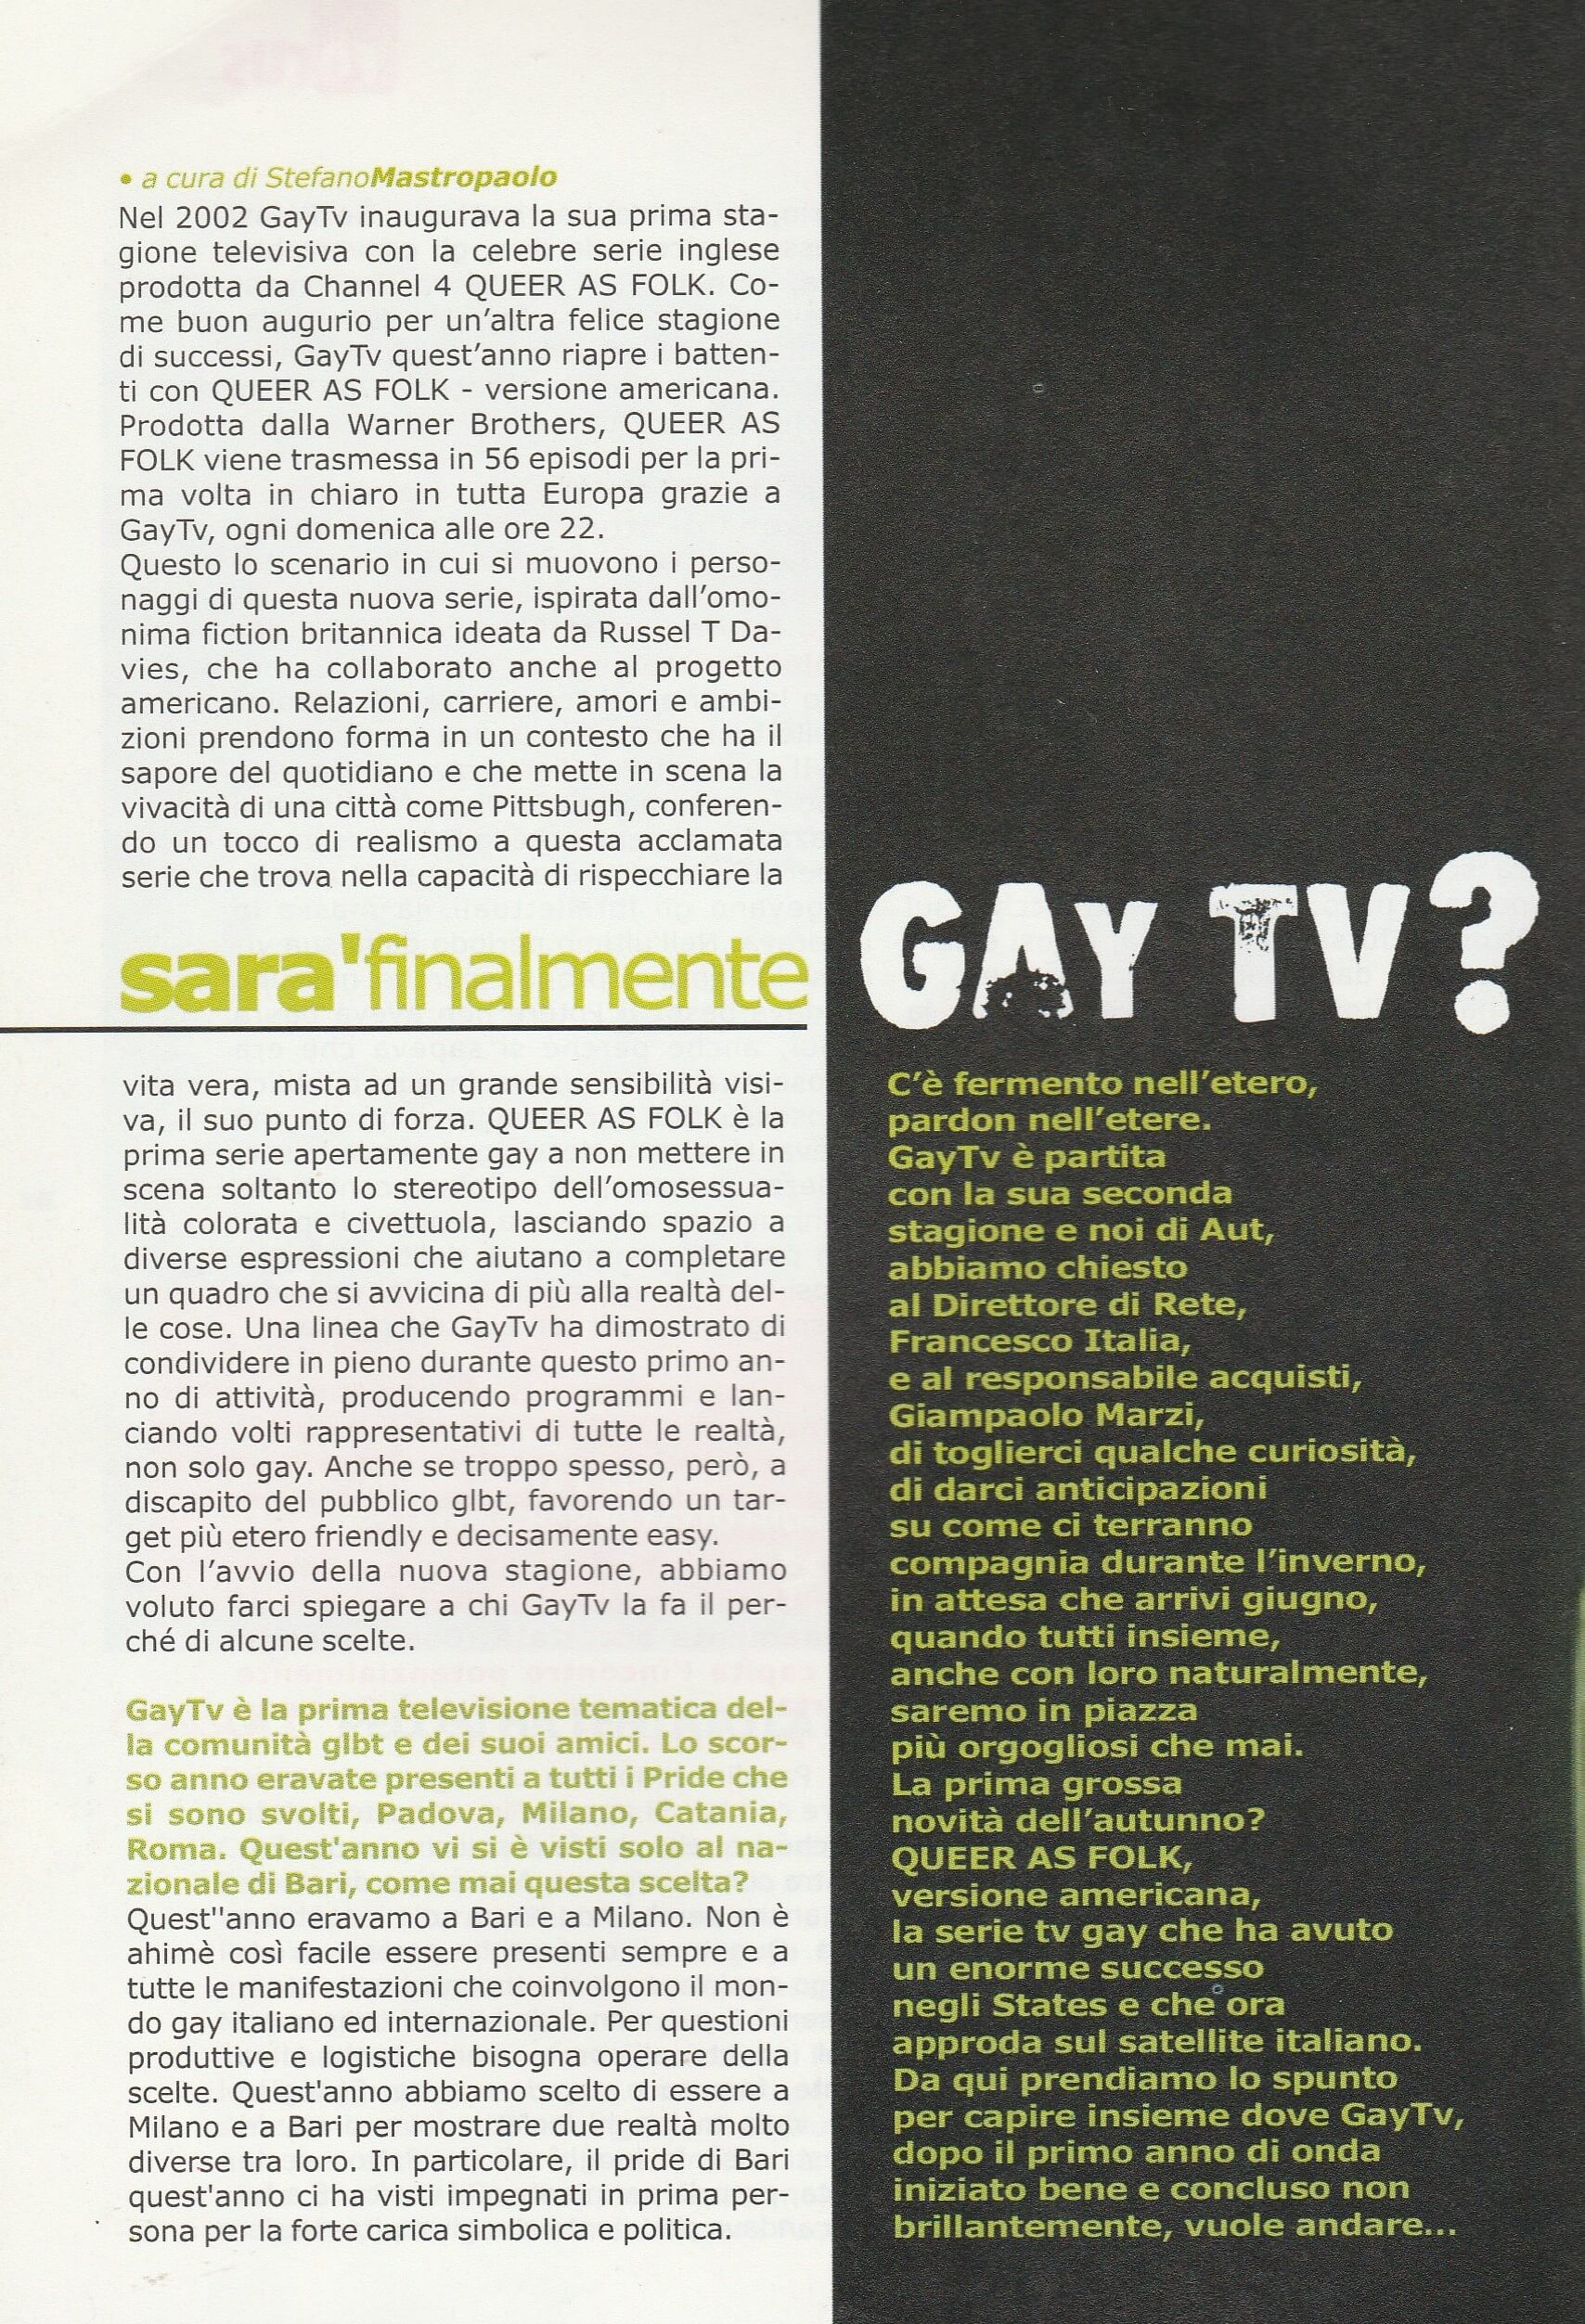 Nel 2002 nasce GAY.tv, la prima emittente televisiva italiana rivolta principalmente ad un pubblico LGBTQ. In questo articolo apparso sul periodico "Aut" nel novembre 2003 si fa il punto sulla situazione del canale, ad un anno dalla sua apertura.